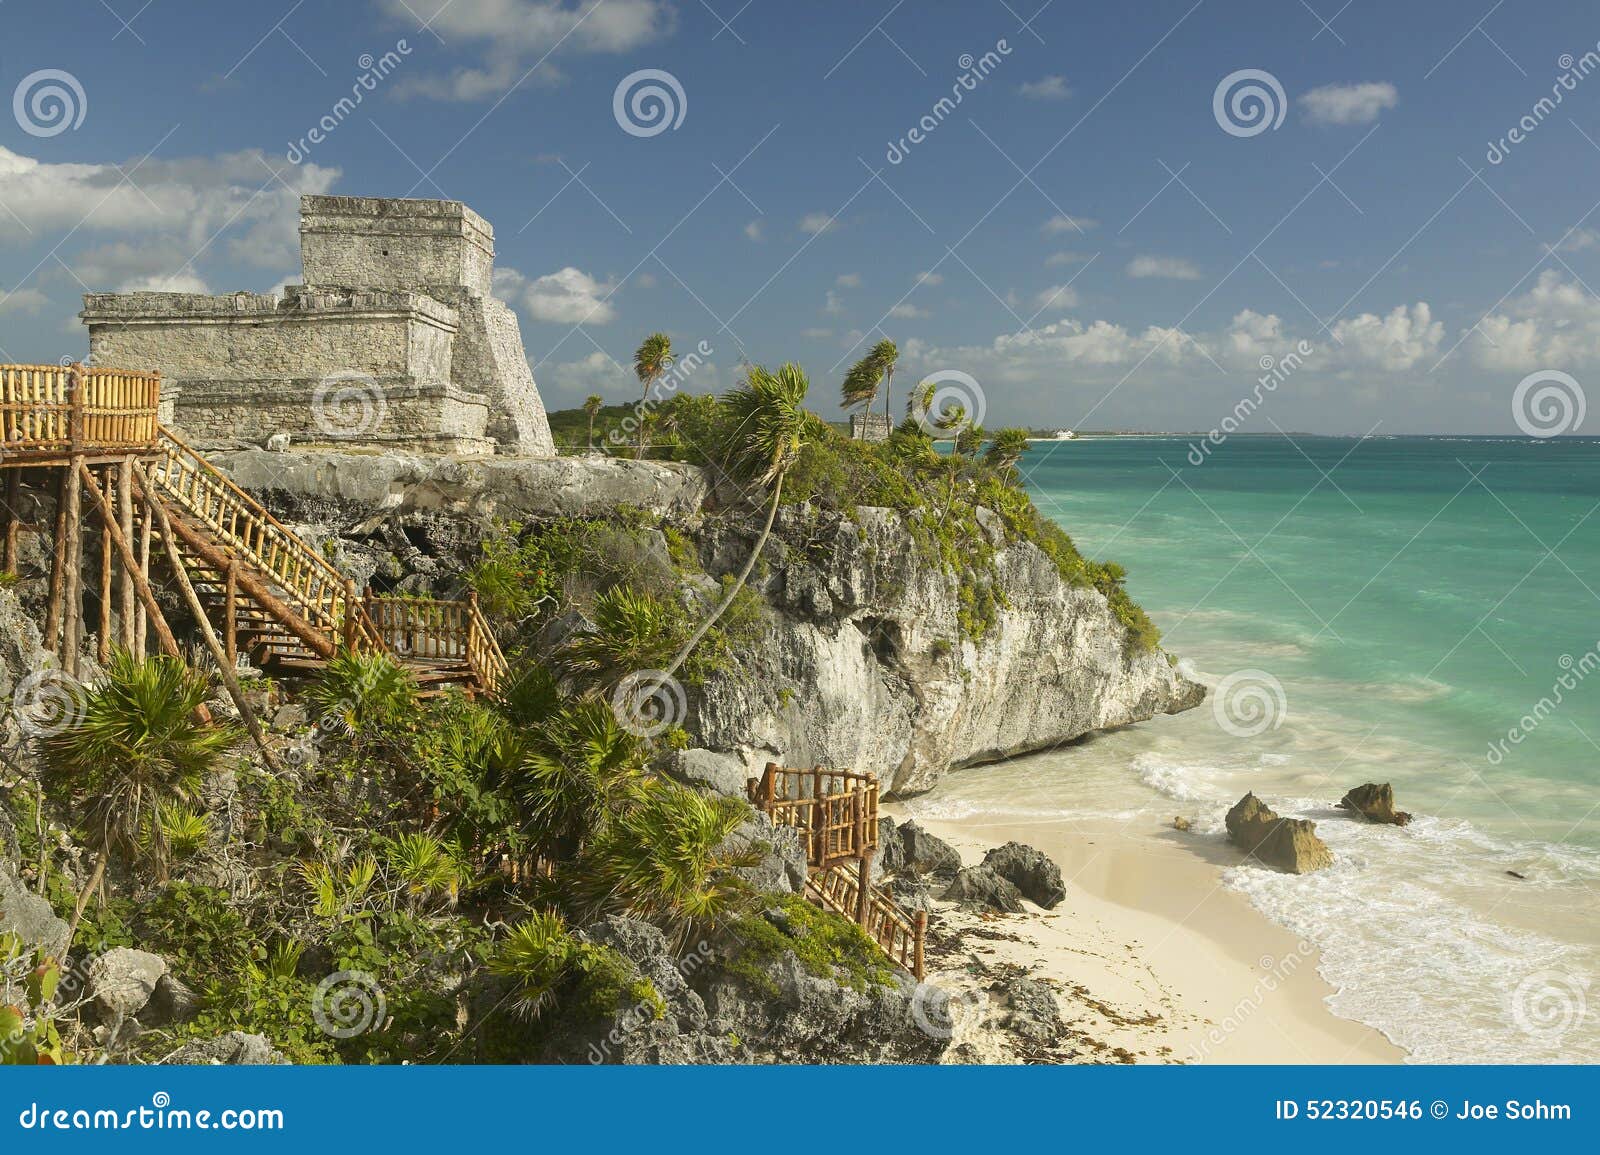 el castillo is pictured in mayan ruins of ruinas de tulum (tulum ruins) in quintana roo, yucatan peninsula, mexico.